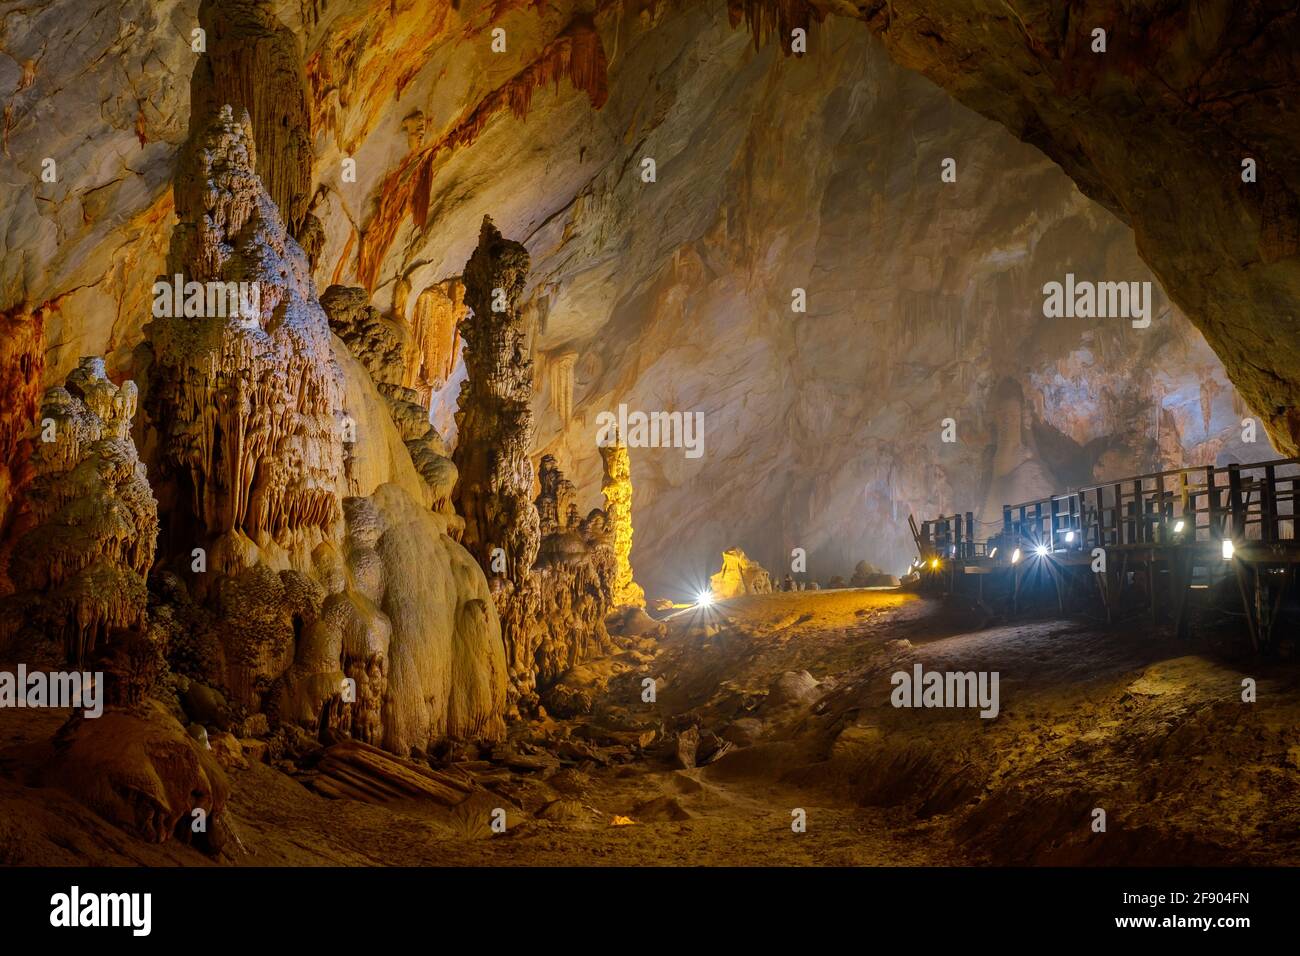 Phong Nha, Vietnam - April 08, 2016: Colorful Paradise cave with big stalagmites and stalactites in Phong Nha-Ke Bang National Park, Vietnam Stock Photo